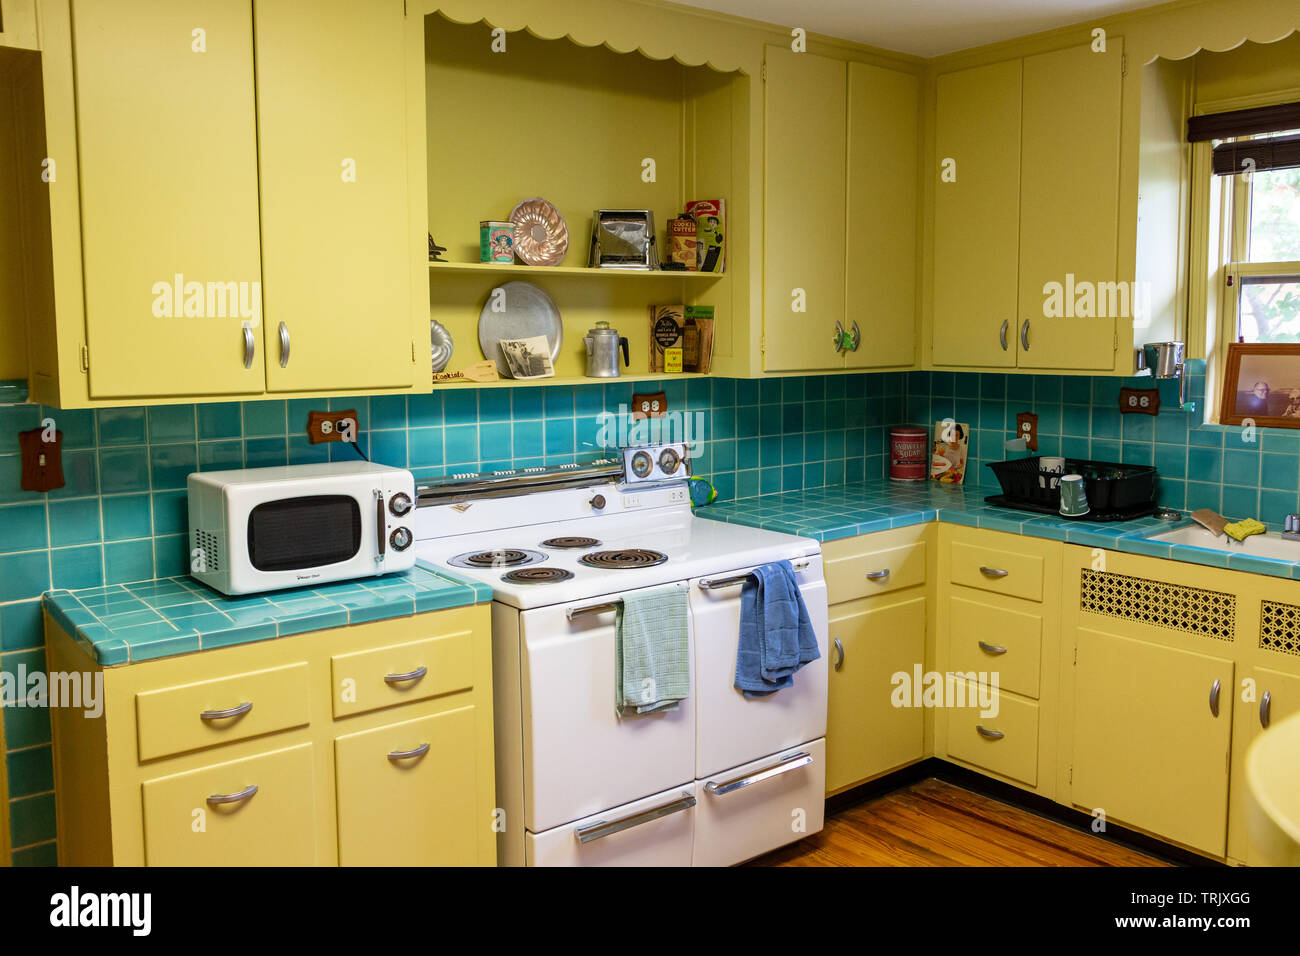 Retro 1940s Style Kuche Mit Gelben Und Blauen Kacheln Am Historischen Schreiner Haus Hollywood Florida Usa Stockfotografie Alamy